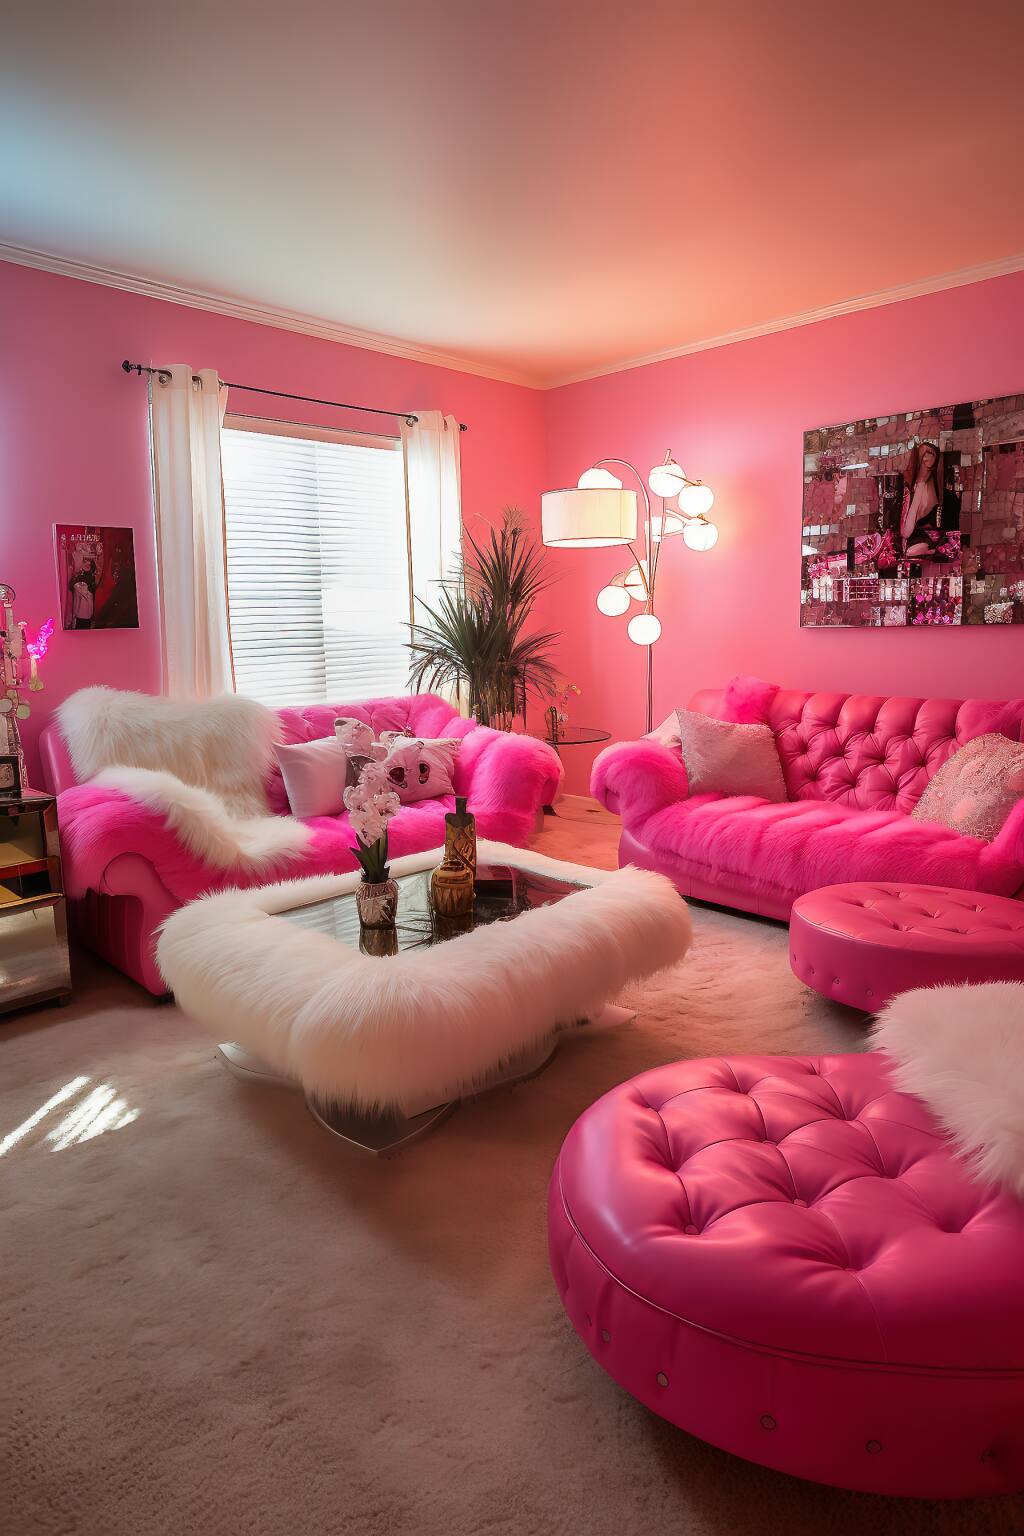 Ein Glamouröses Wohnzimmer Mit Fuchsiafarbenen Wänden Und Möbeln, Weißen Kunstpelz-Akzenten Und Einem Modernen Couchtisch Aus Glas In Einem Warmen, Stimmungsvollen Licht.